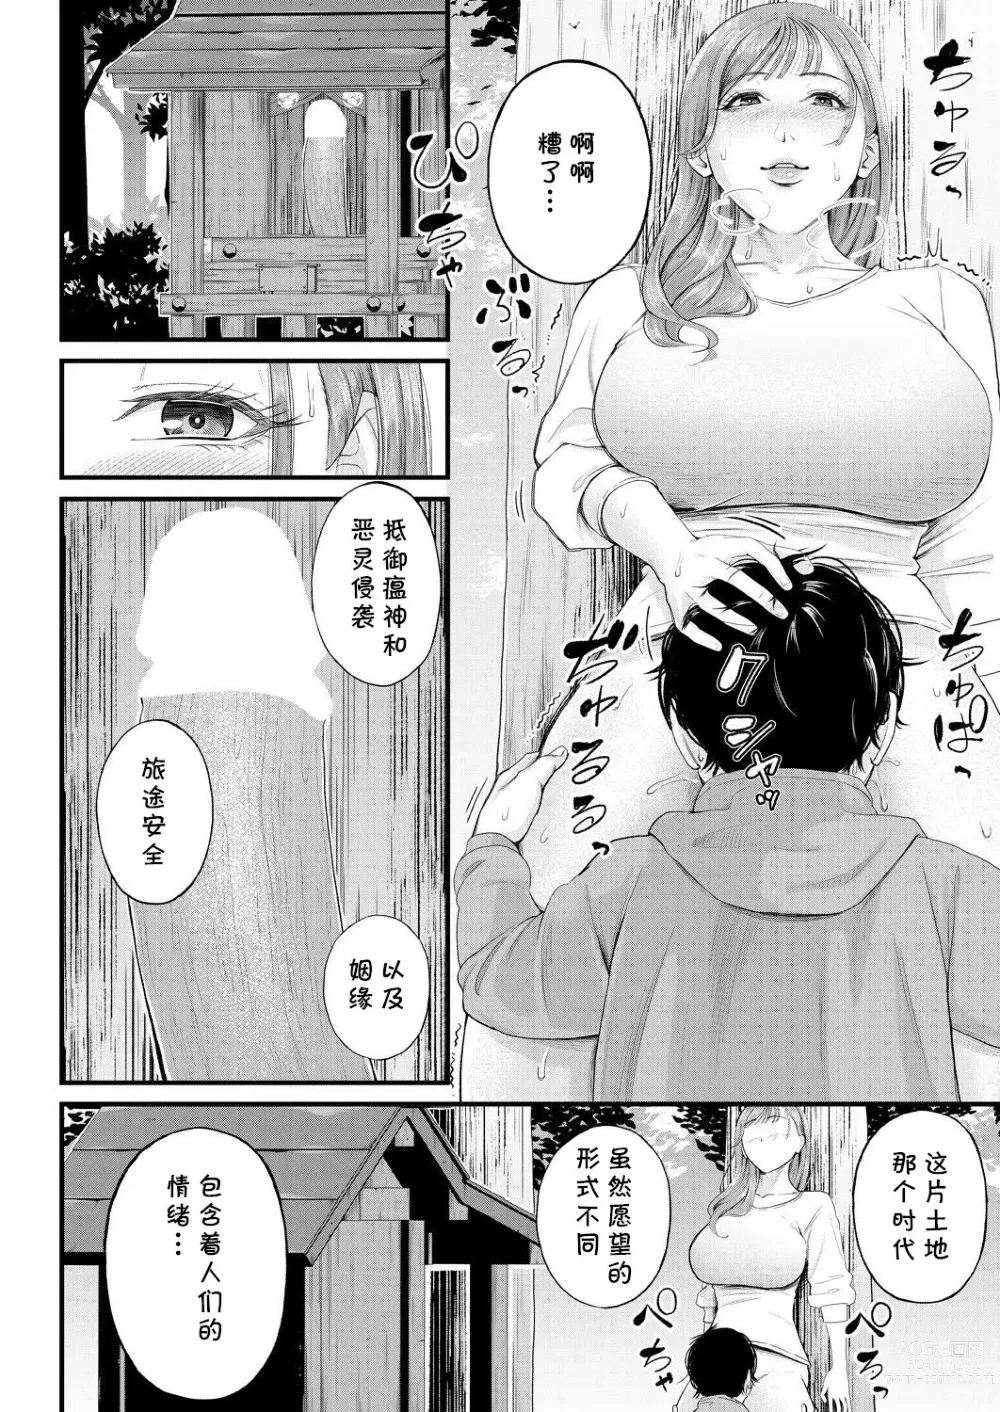 Page 16 of manga Kowaku no Field Work